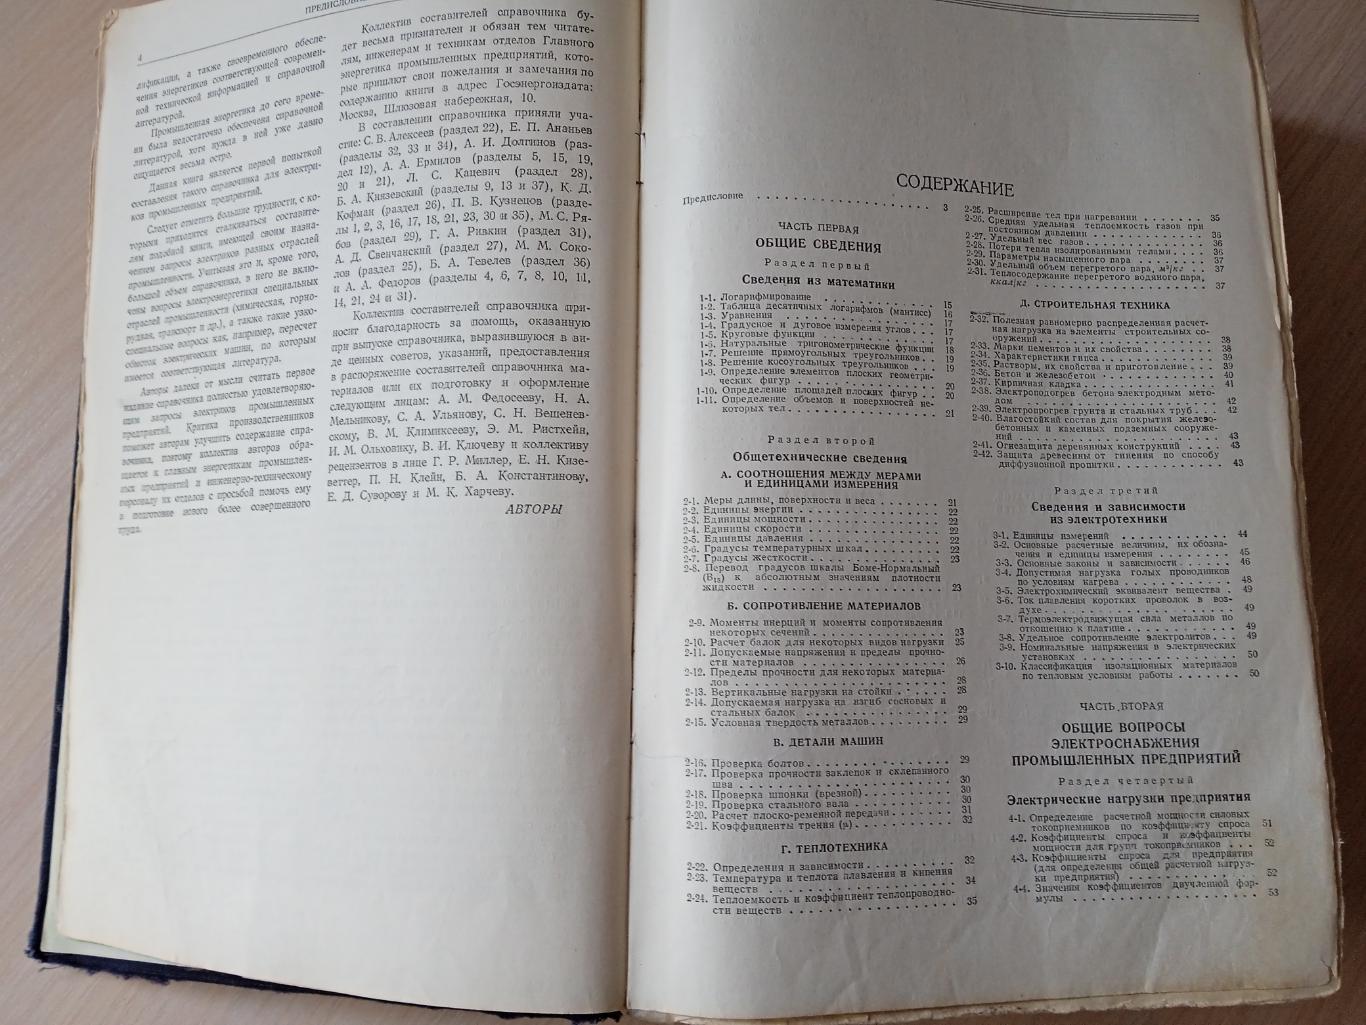 Справочник электрика промышленных предприятий 1954 г. 1